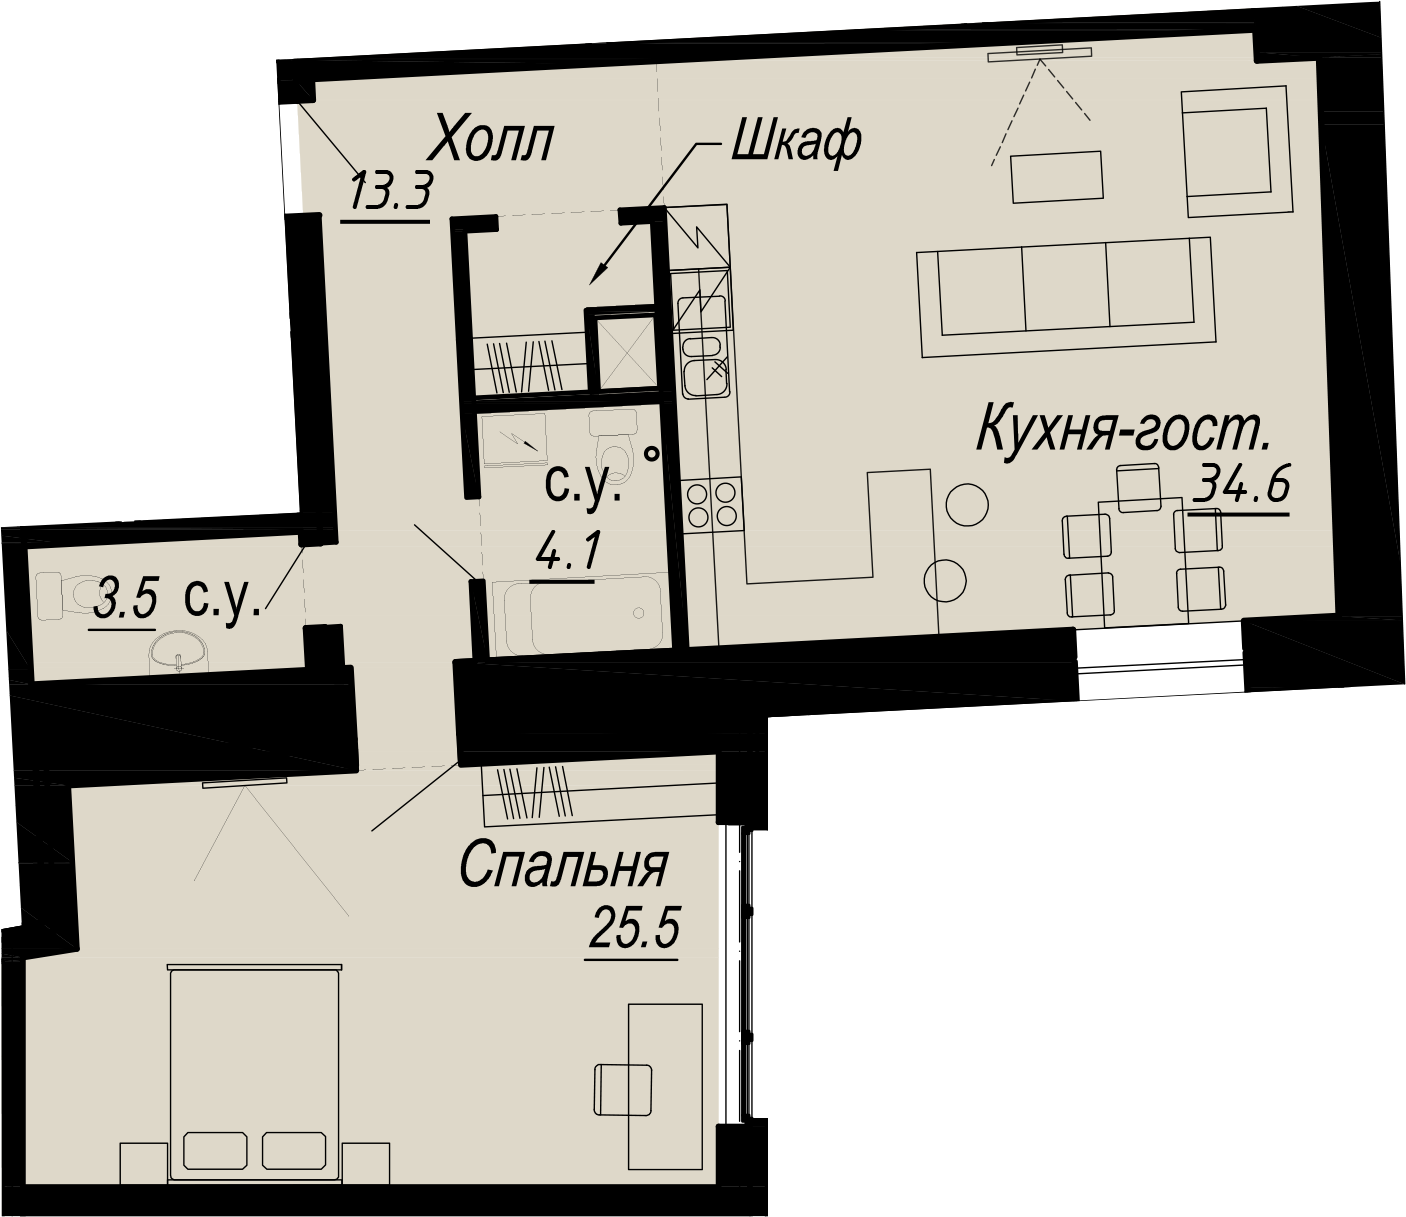 1-комнатная квартира  №19-3 в Meltzer Hall: 80.5 м², этаж 3 - купить в Санкт-Петербурге